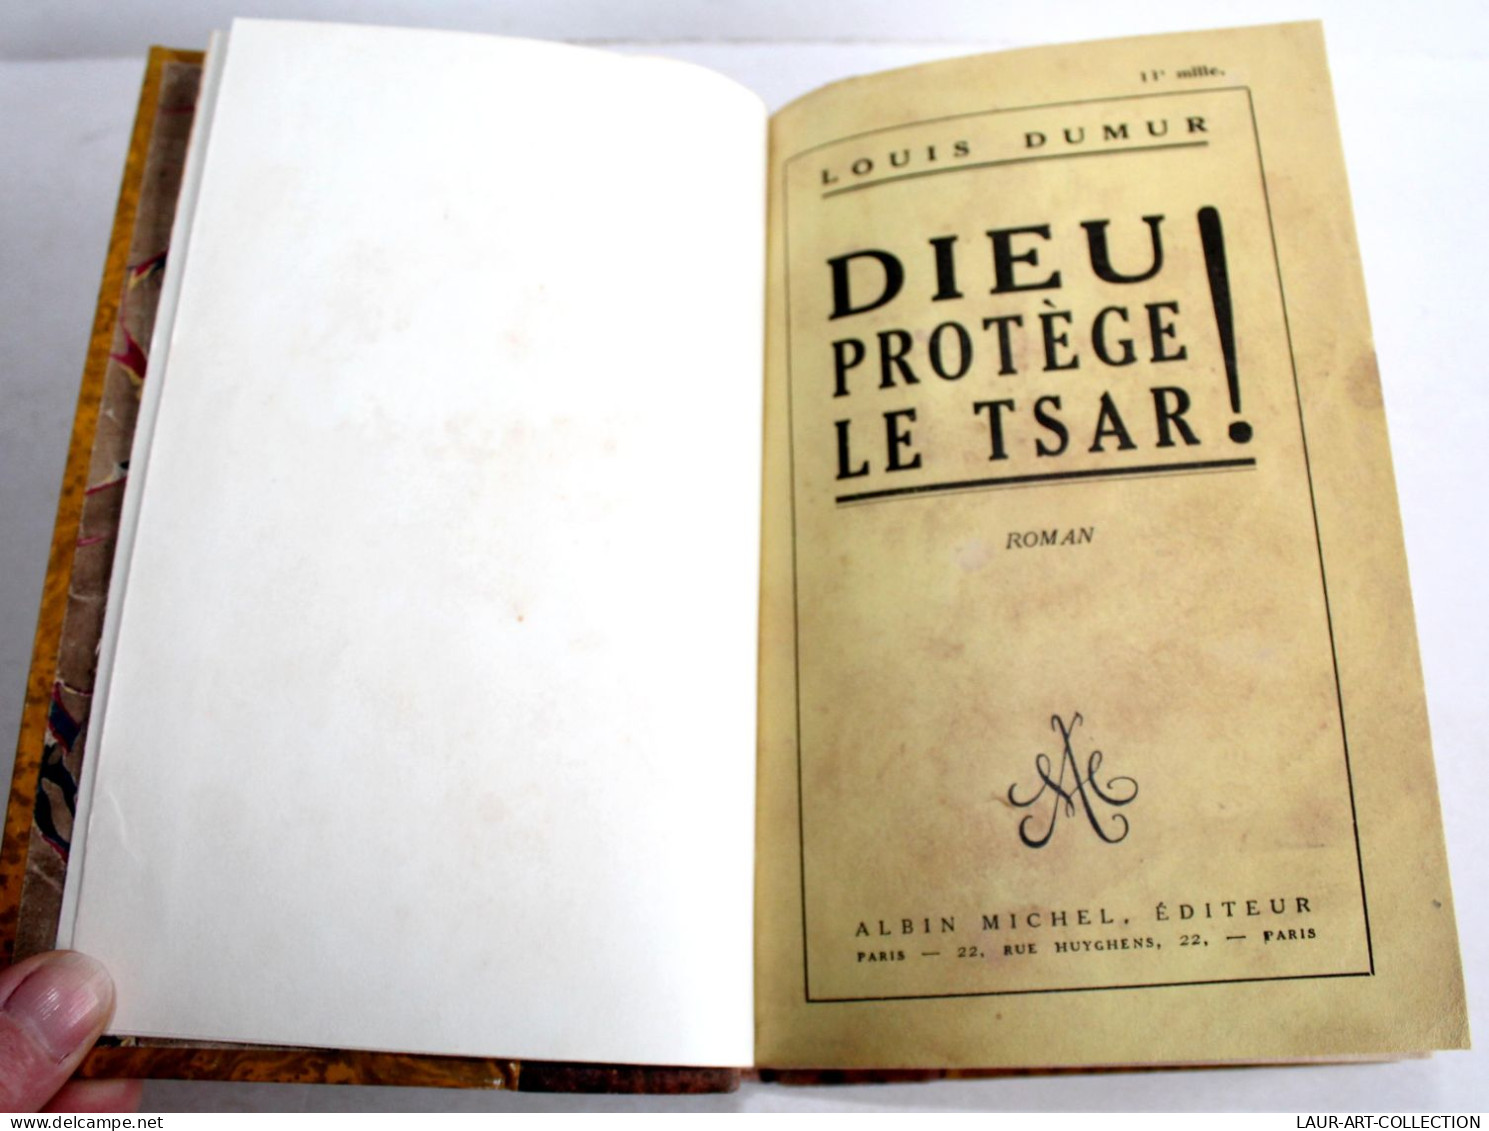 DIEU PROTEGE LE TSAR ! ROMAN De LOUIS DUMUR 1927 ALBIN MICHEL EDITEUR / LIVRE ANCIEN XXe SIECLE (2204.135) - 1901-1940